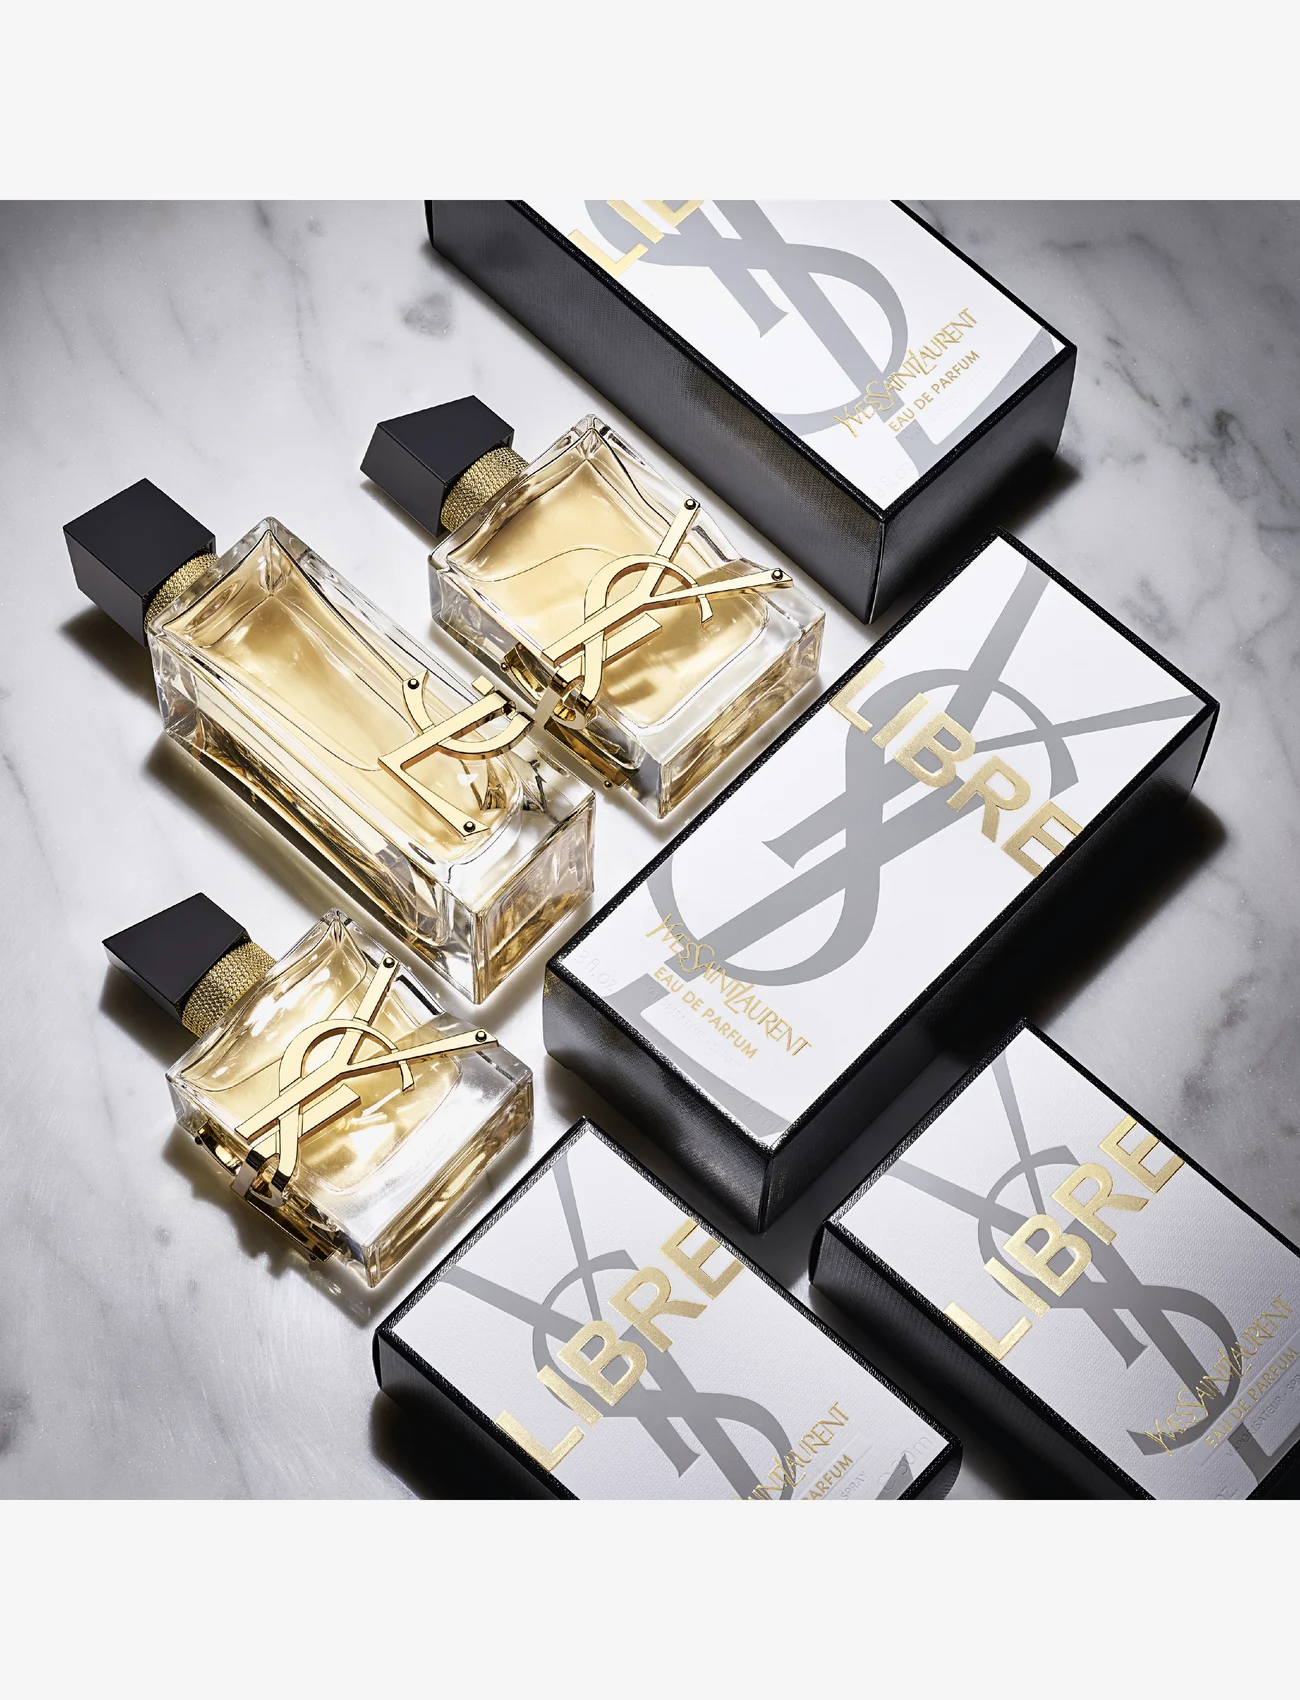 Yves Saint Laurent - Libre Eau de Parfum - mellem 500-1000 kr - no colour - 13